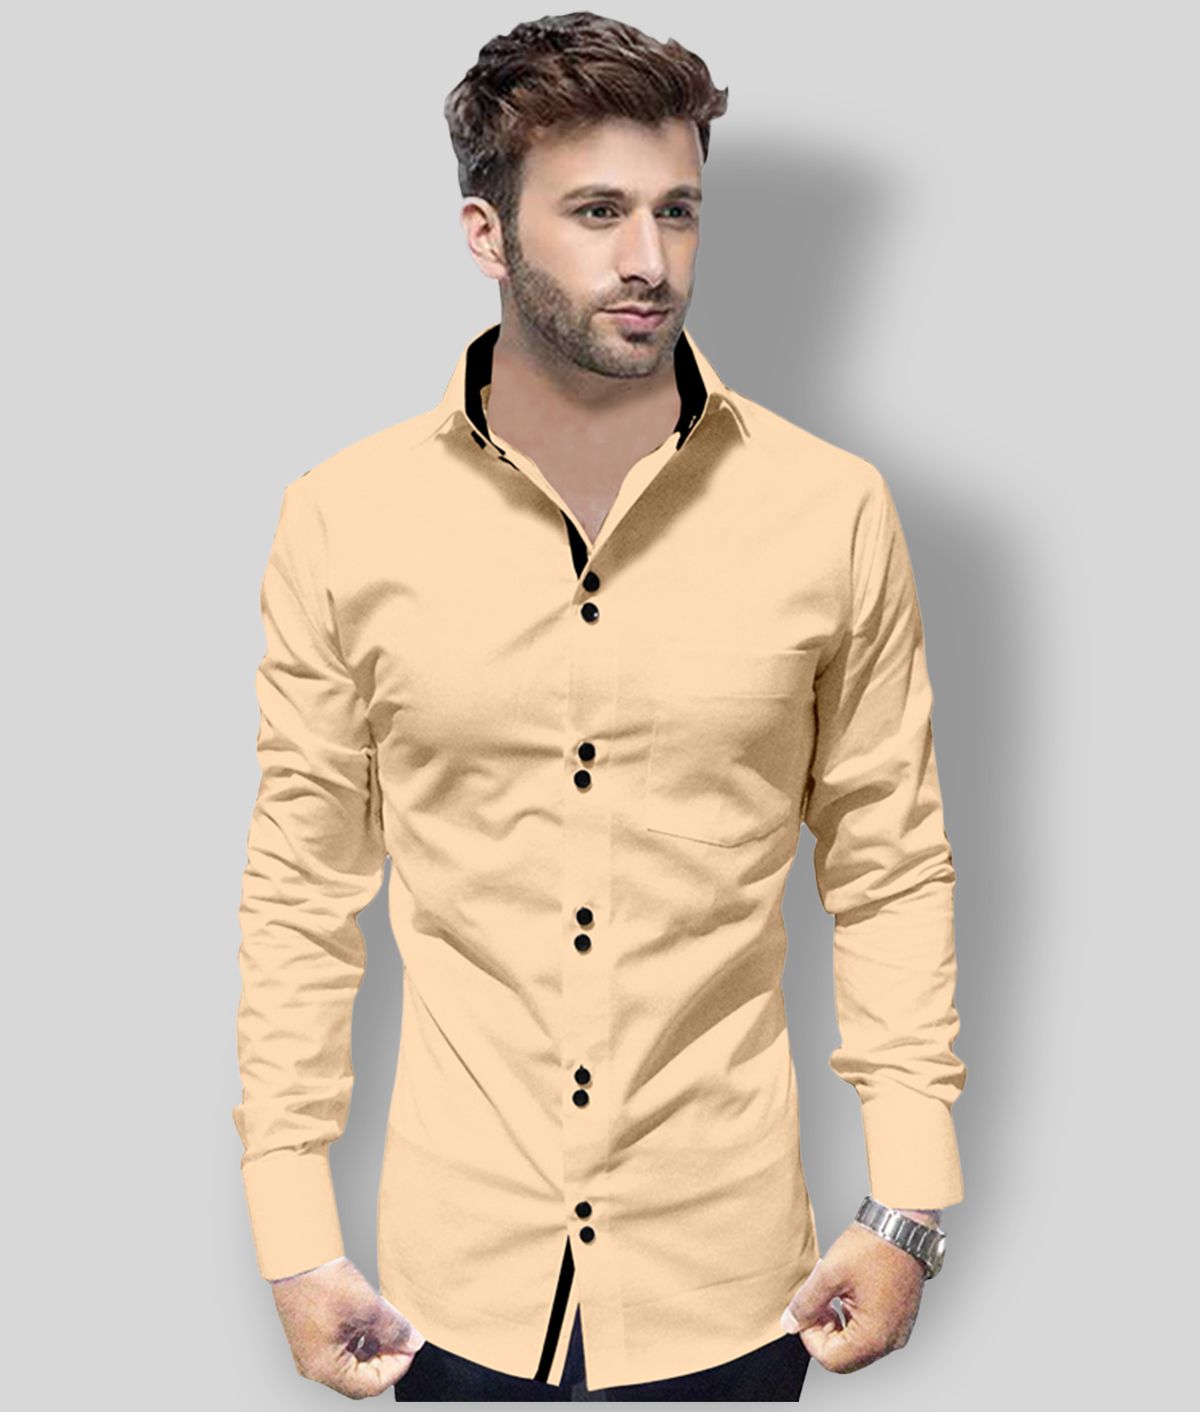 P&V - Beige Cotton Blend Regular Fit Men's Casual Shirt (Pack of 1)